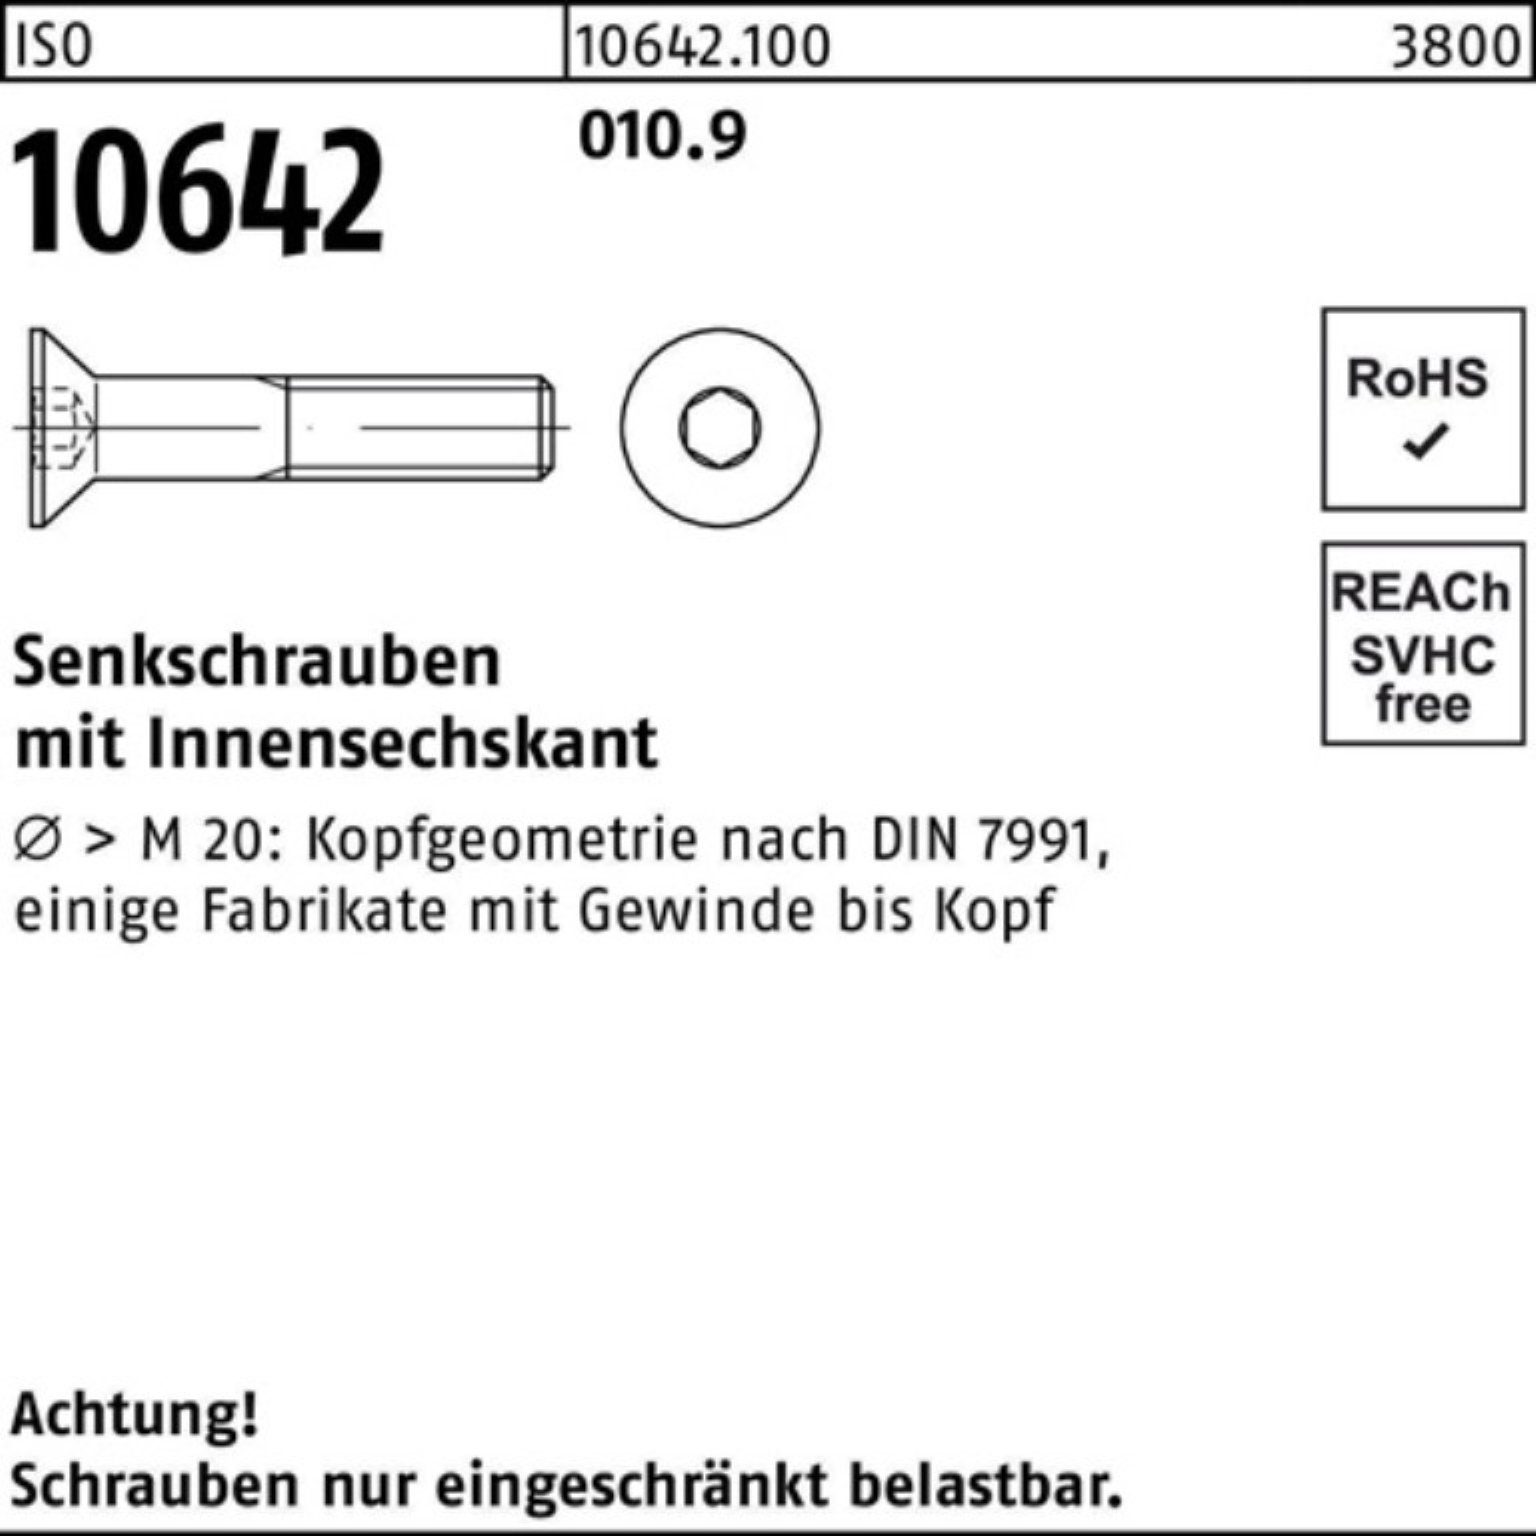 Innen-6kt I 150 50 010.9 Senkschraube Senkschraube 10642 Reyher ISO Stück M10x 100er Pack